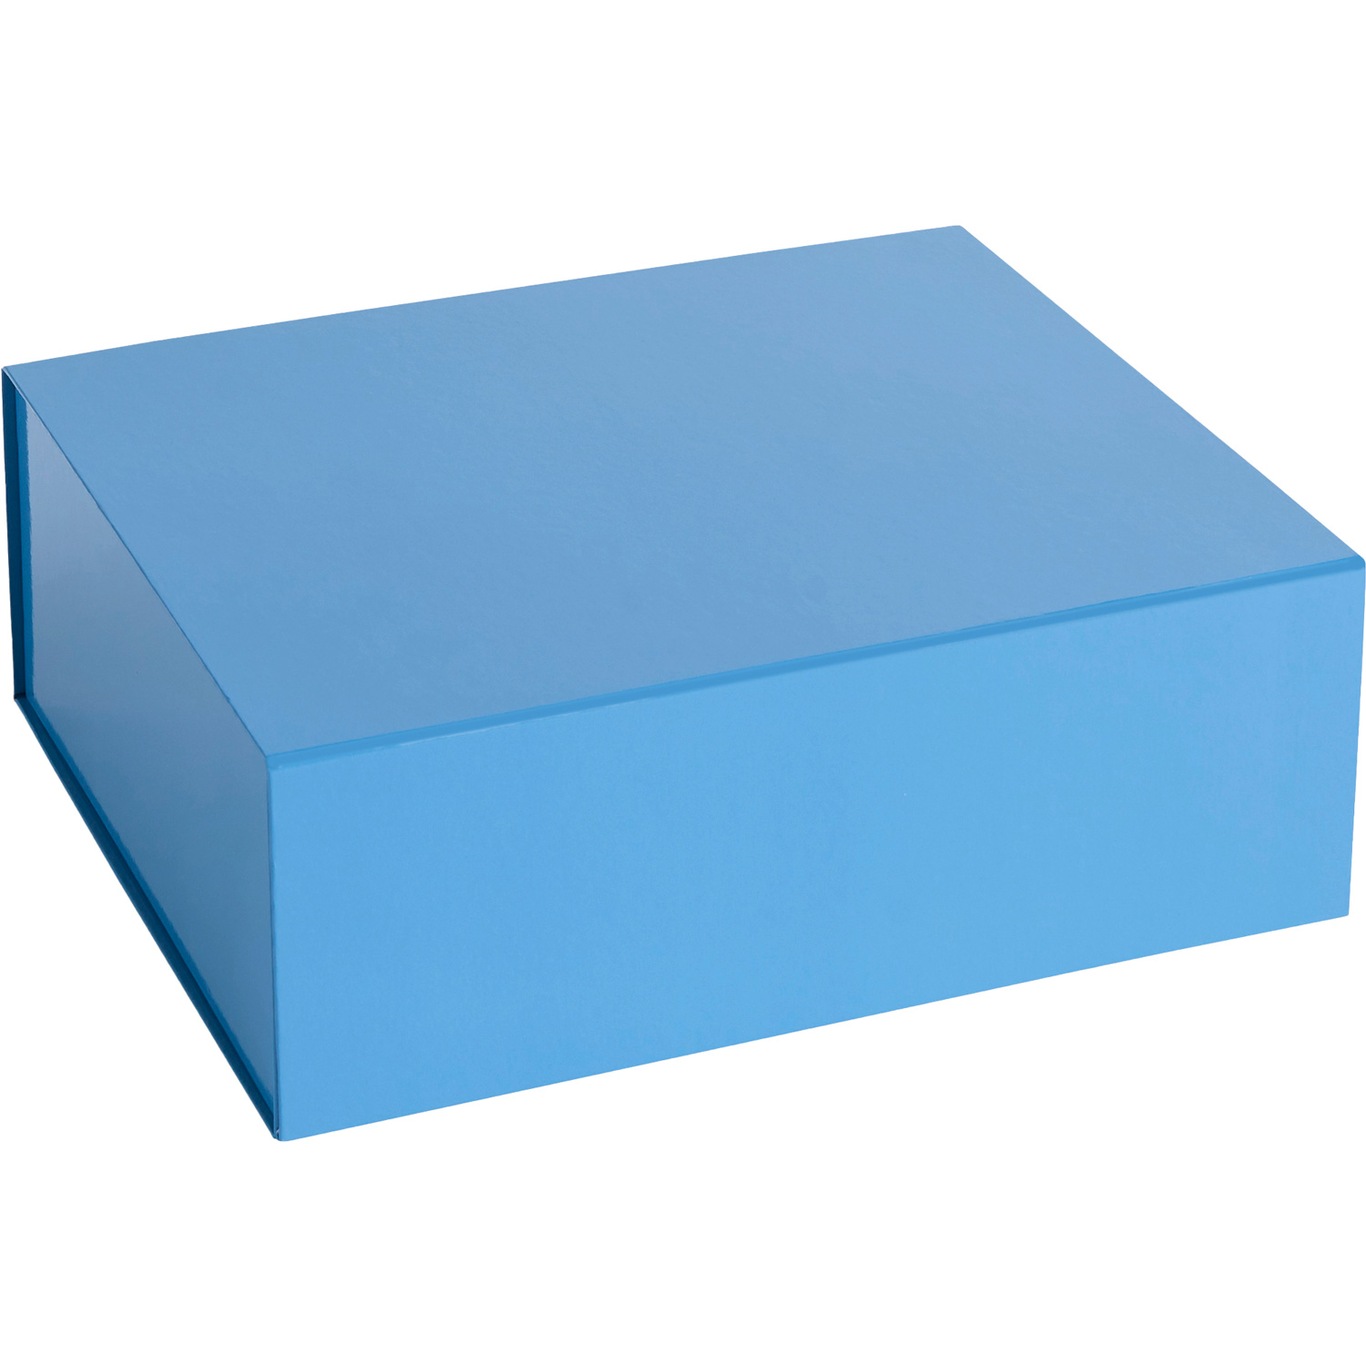 Colour Aufbewahrungsbox M, Sky Blue